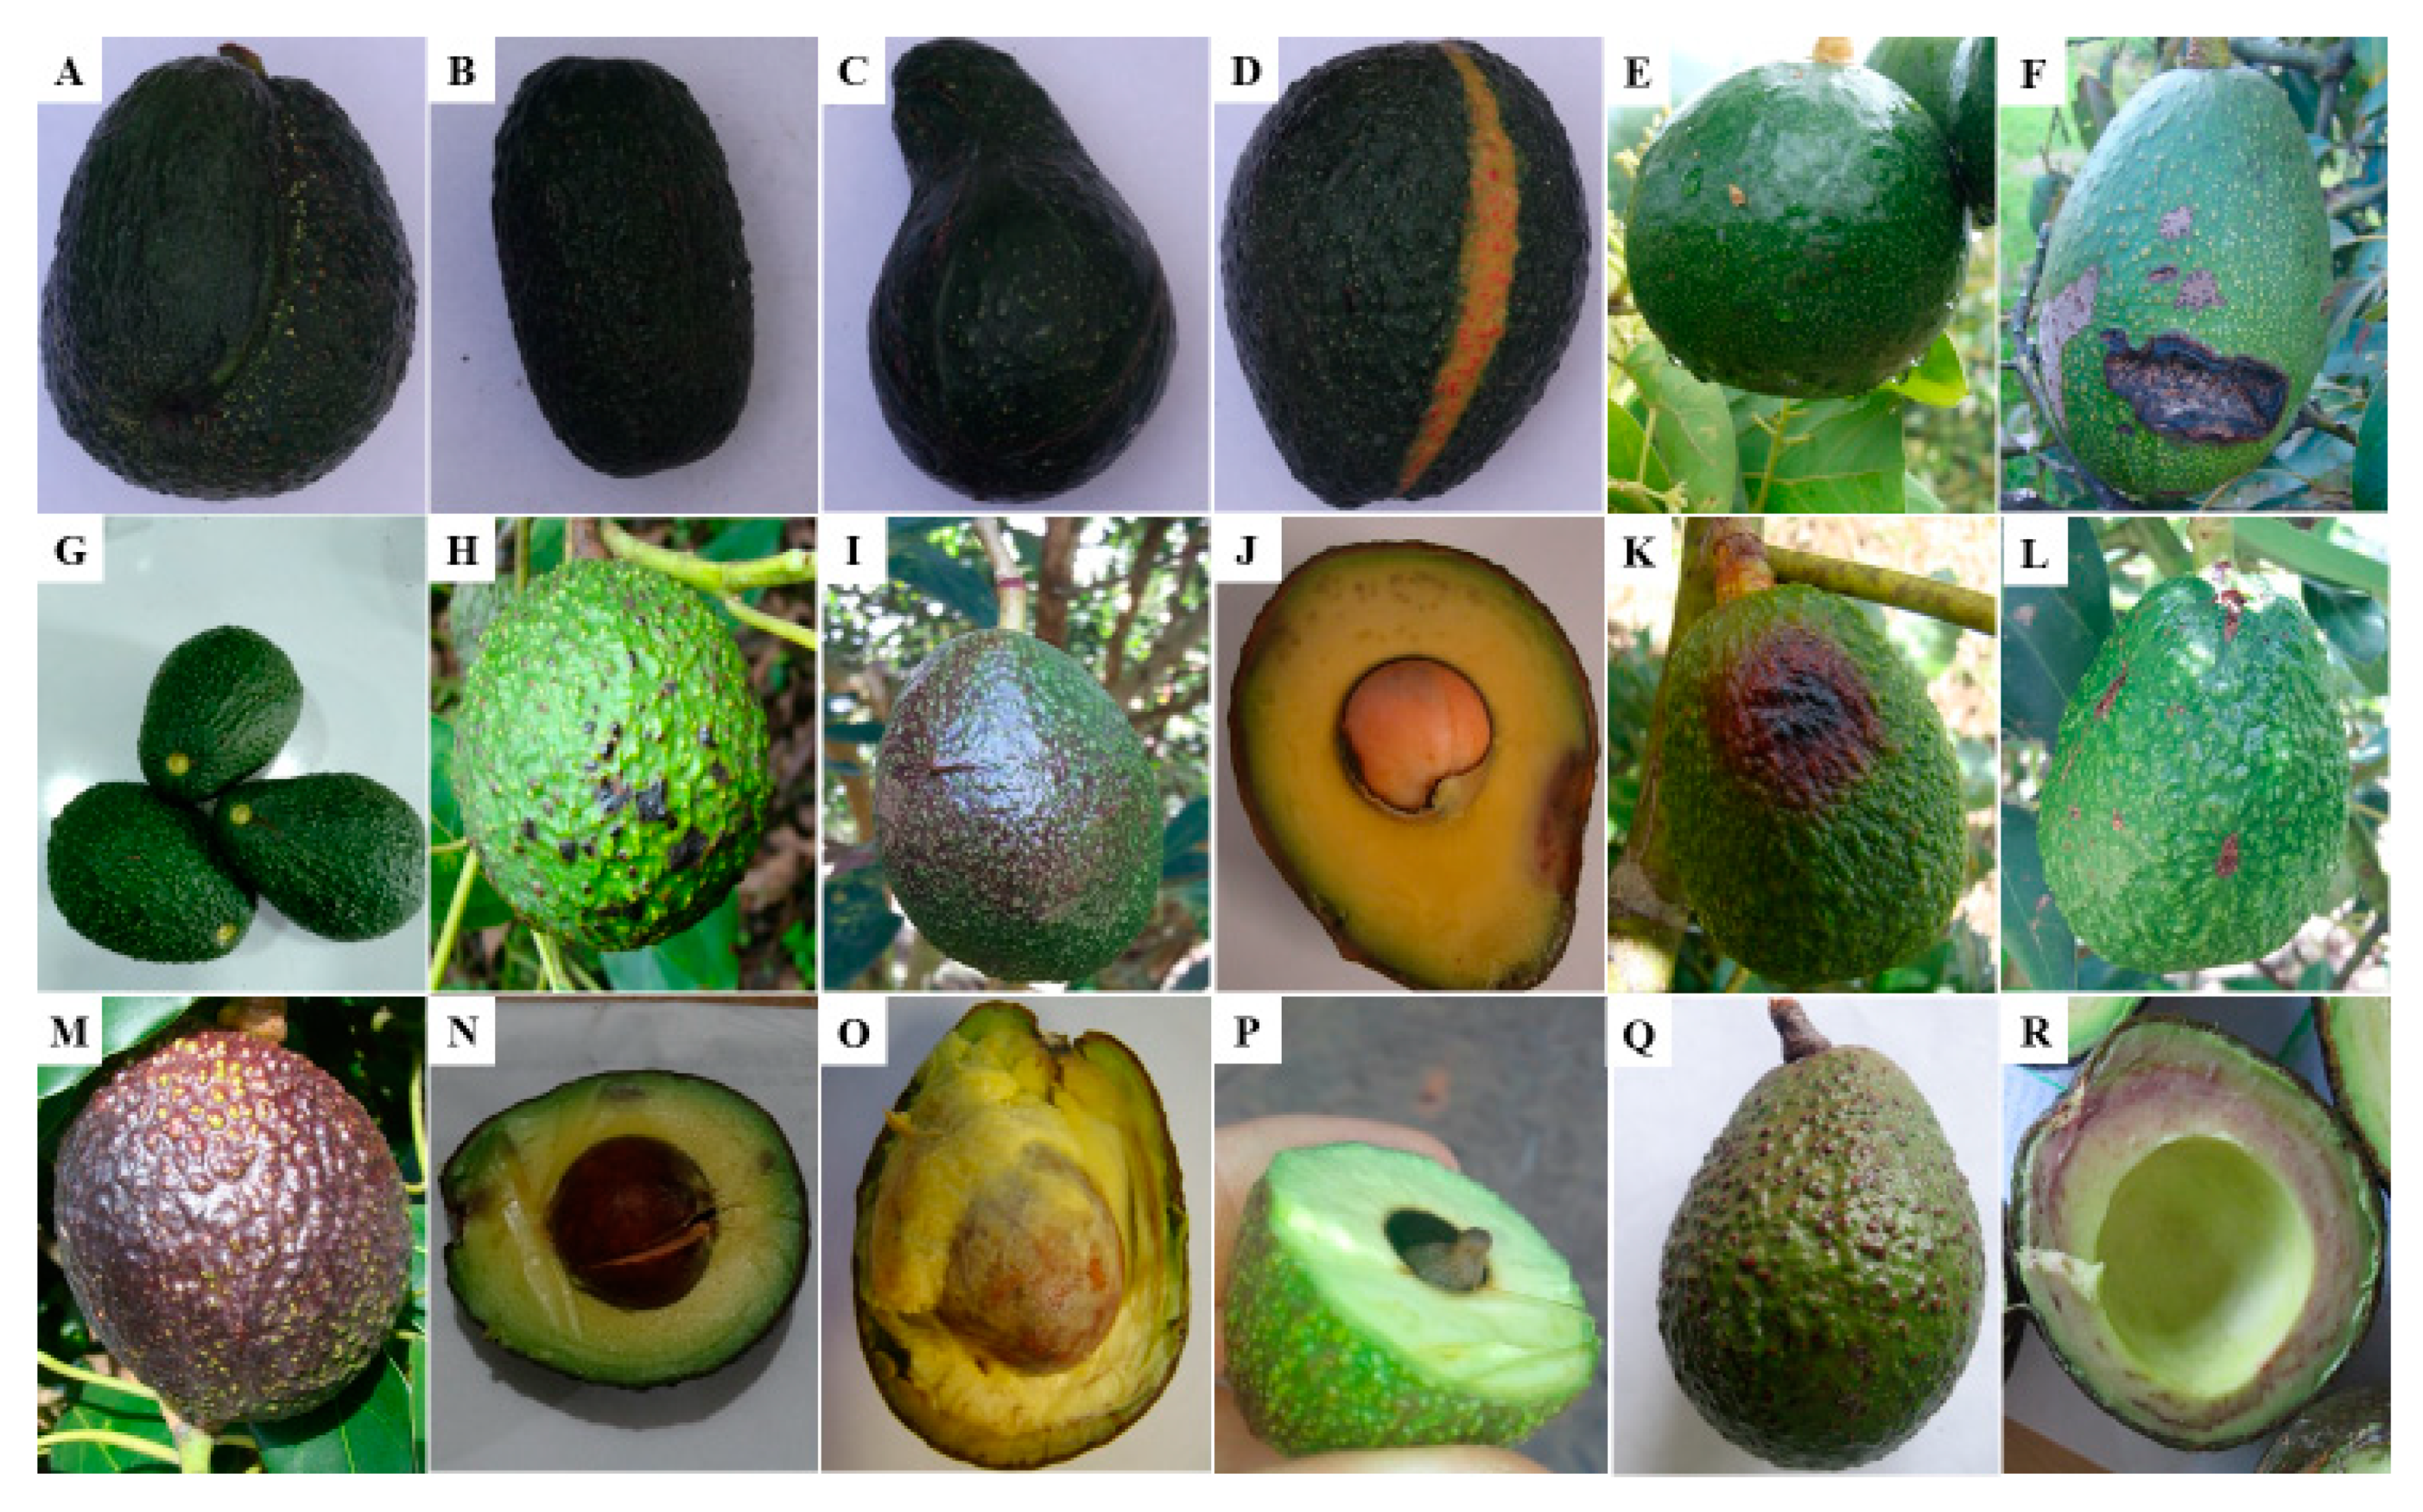 Авокадо хаас чем отличается от обычного плода, описание сорта и полезные свойства